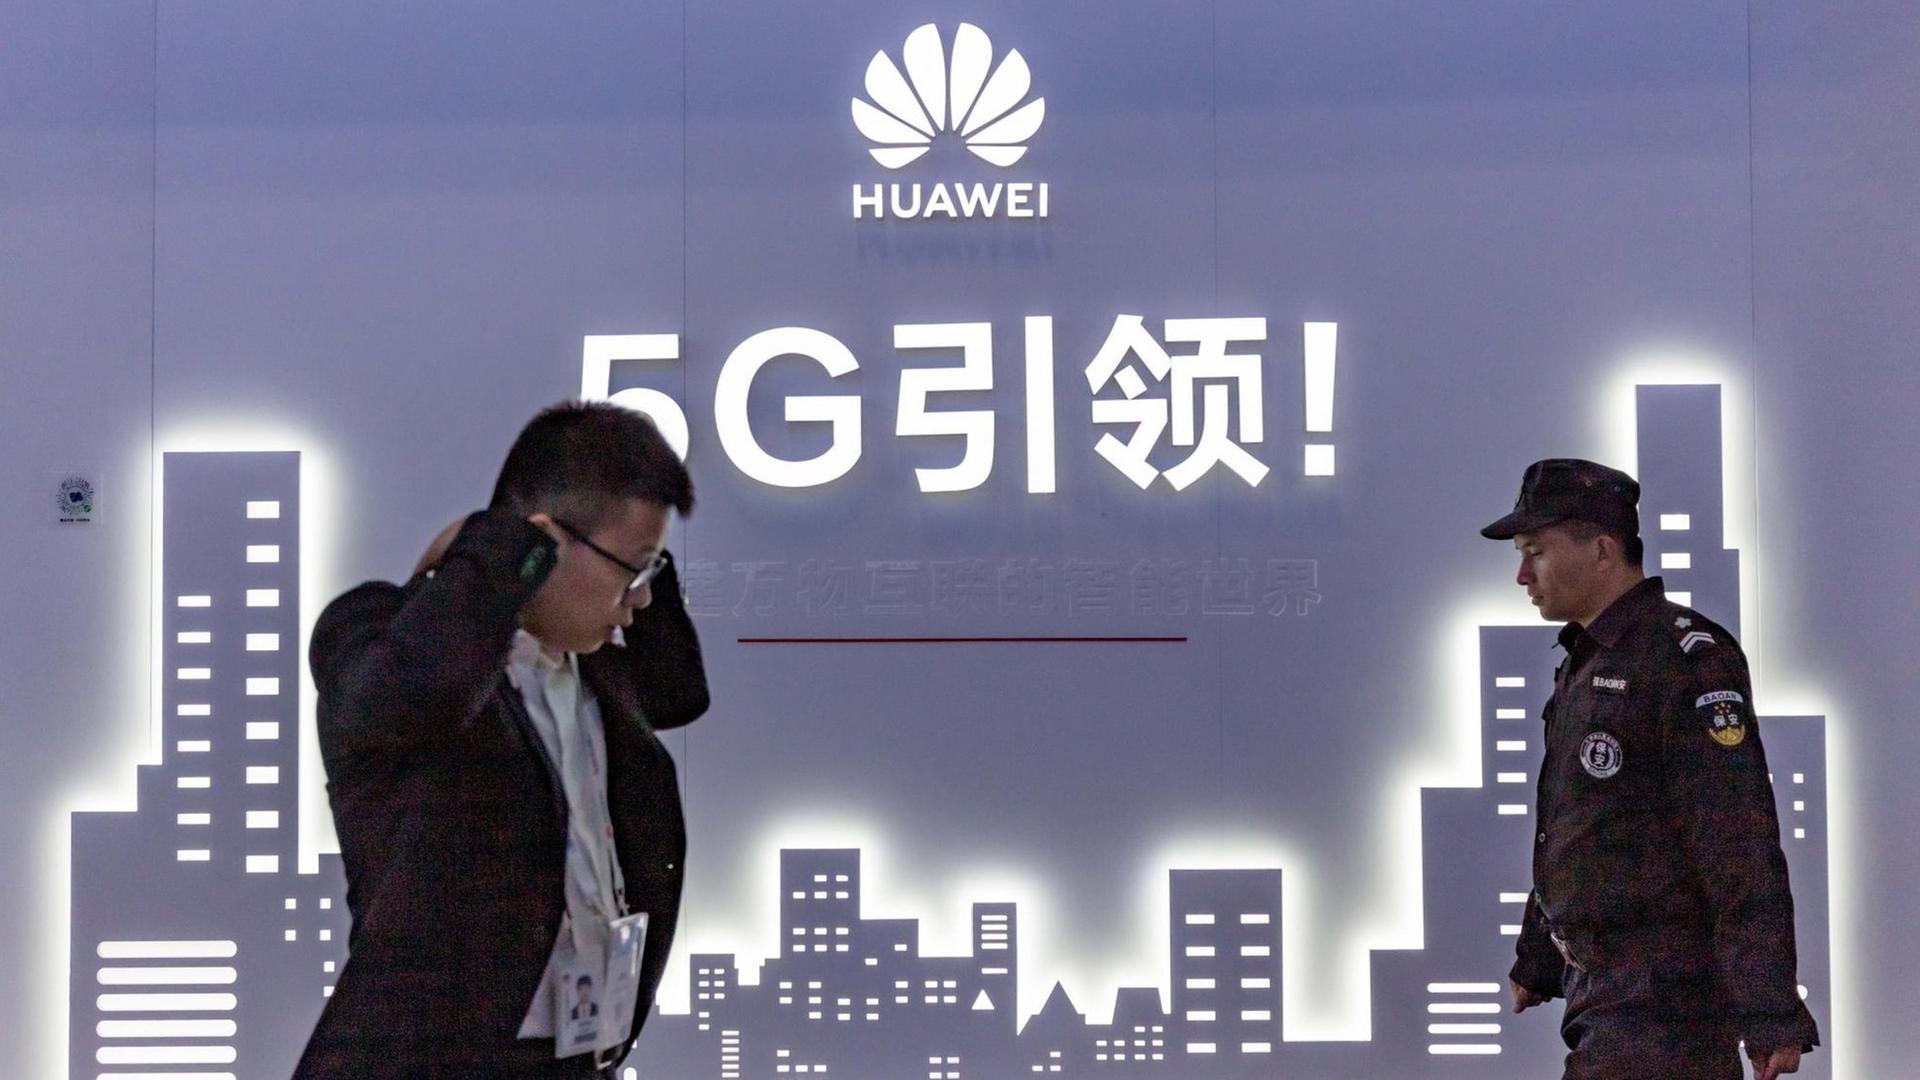 An der Wand eine blaue Grafik mit Hochhäusern, darüber stehen mit weißer Schrift Huawei und 5G sowie chinesische Schriftzeichen. Vor der Wand links ein Mann, der im Laufen telefoniert, von rechts kommt ein Uniformierter.